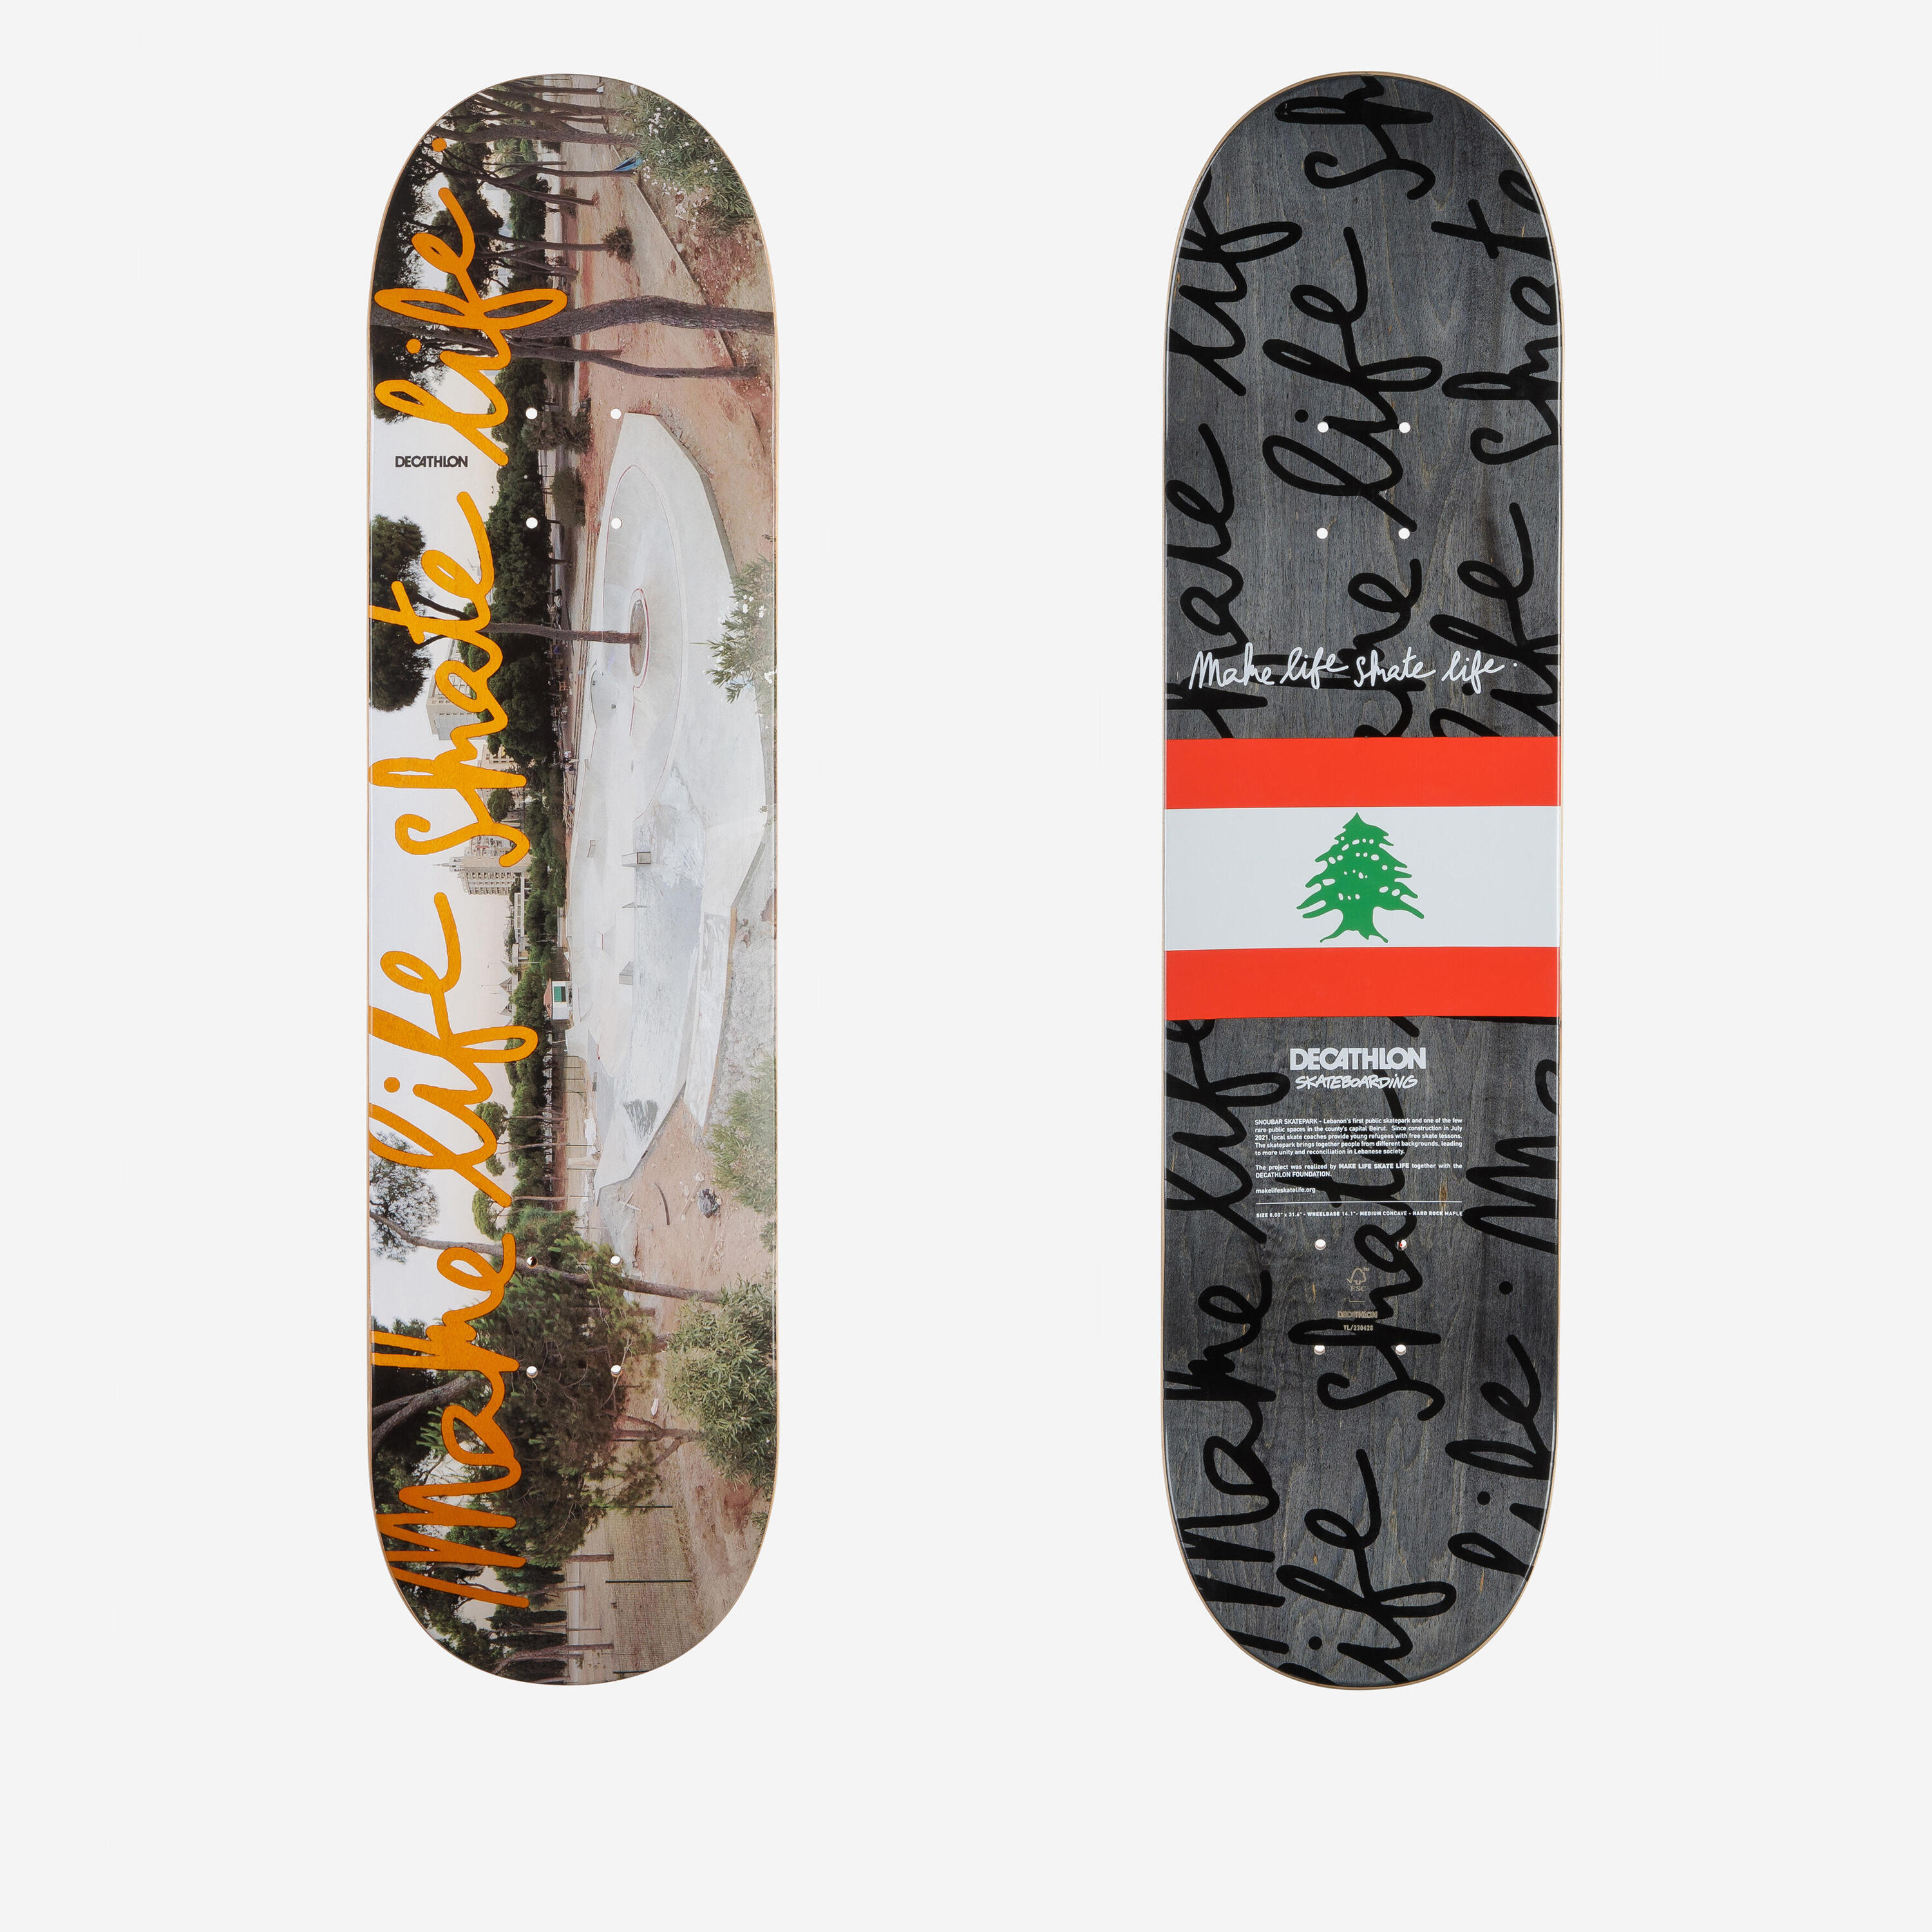 8" Maple Skateboard Deck DK500 Popsicle Make Life Skate Life Lebanon 1/6